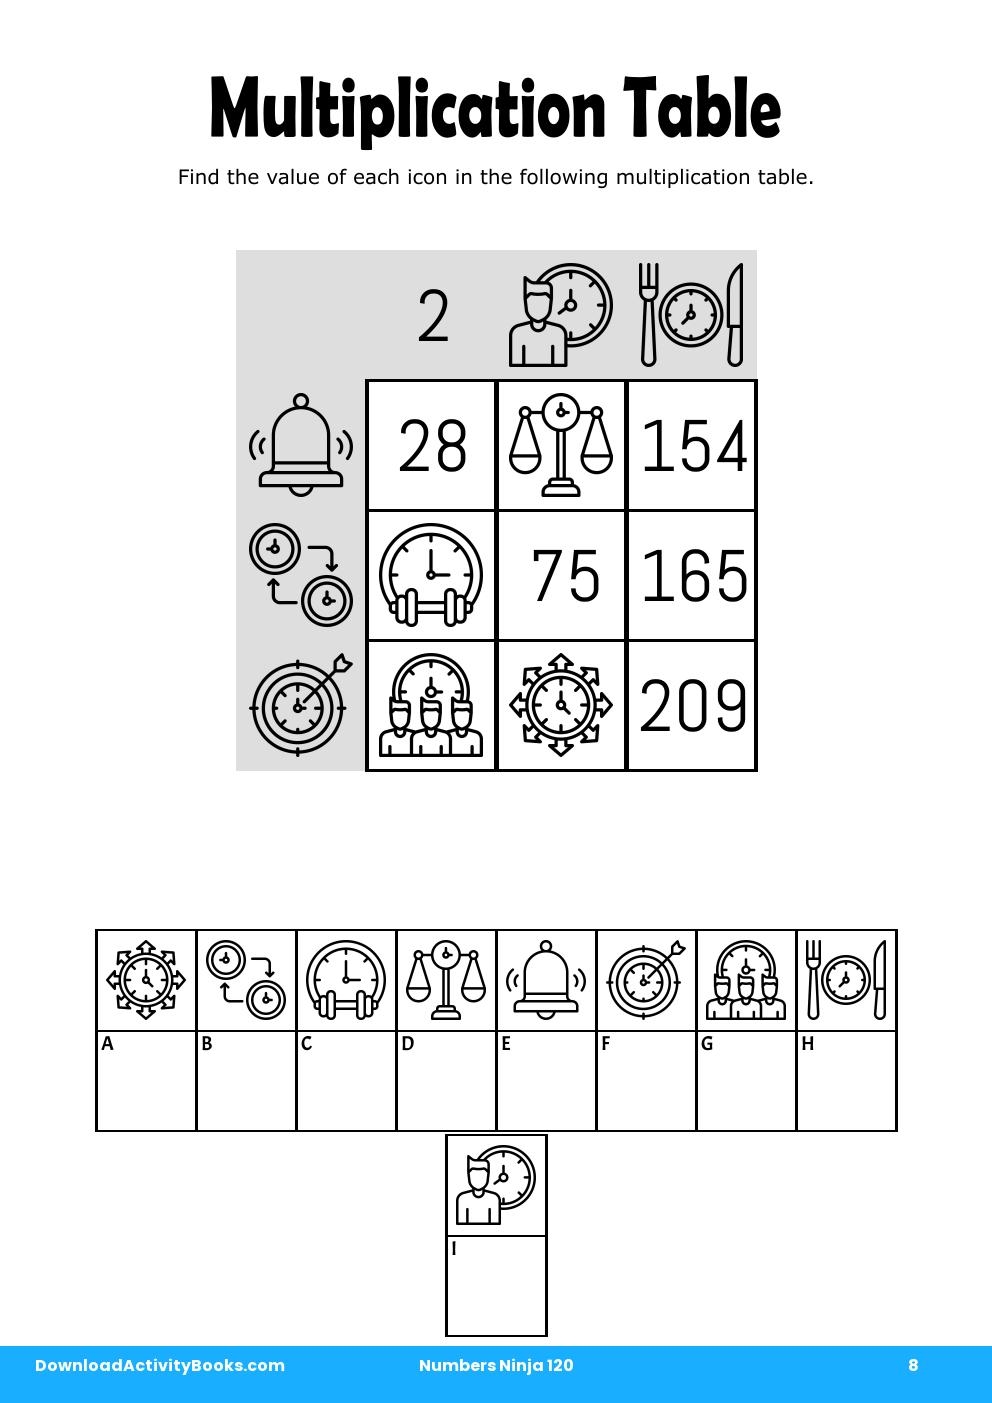 Multiplication Table in Numbers Ninja 120